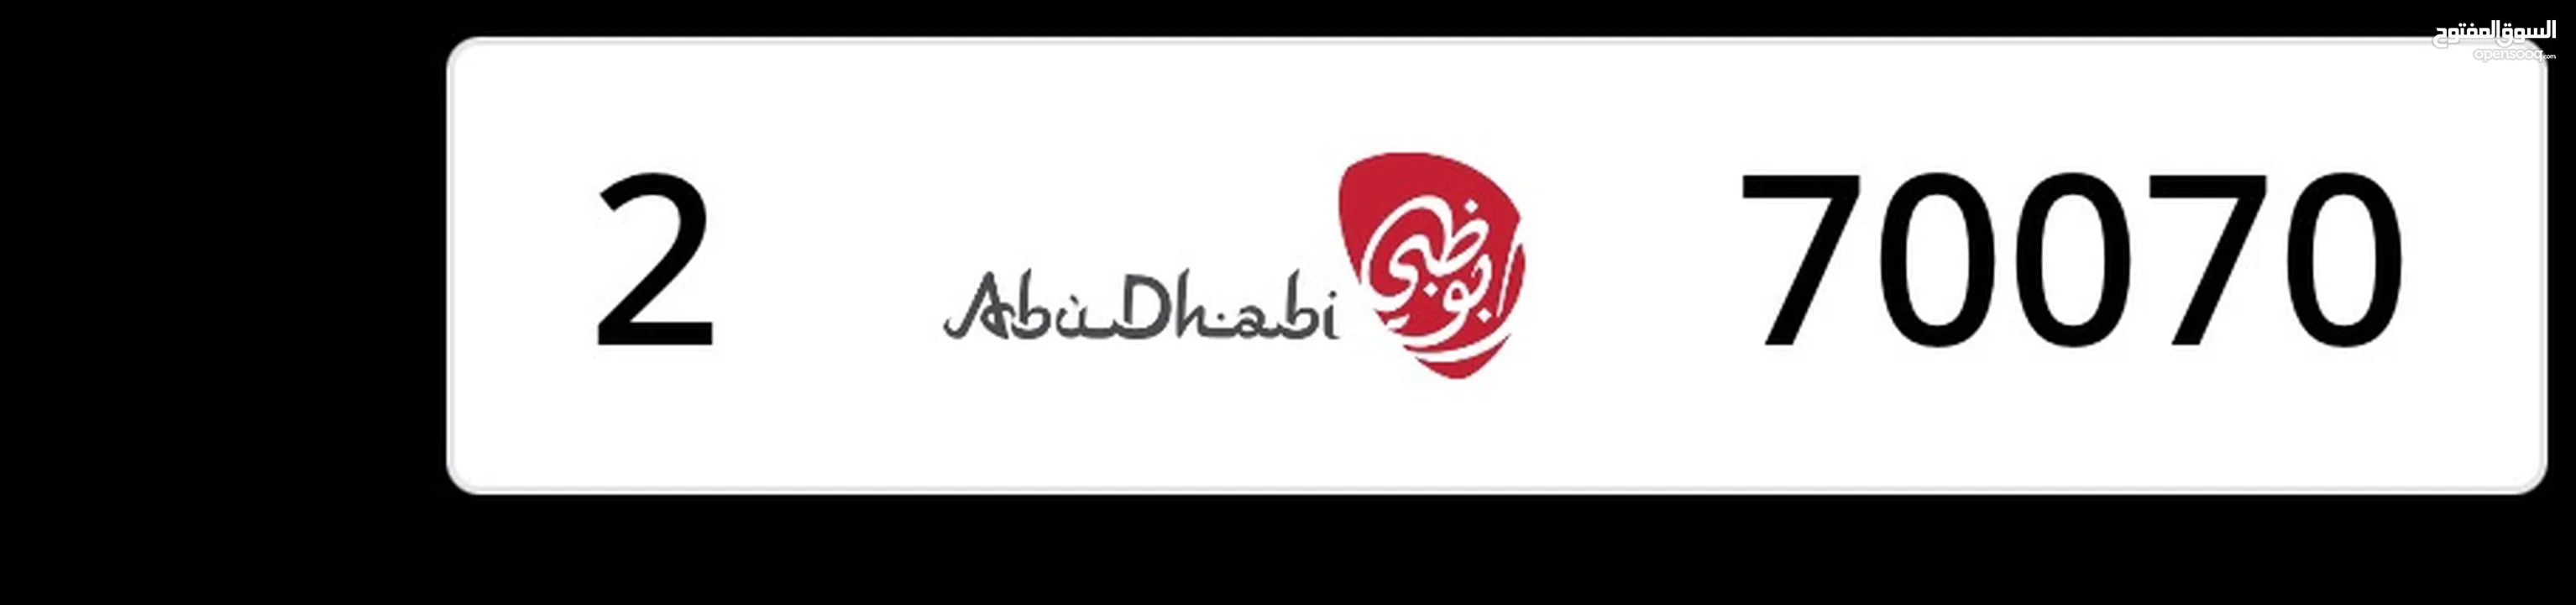 Abu Dhabi70070 / 2